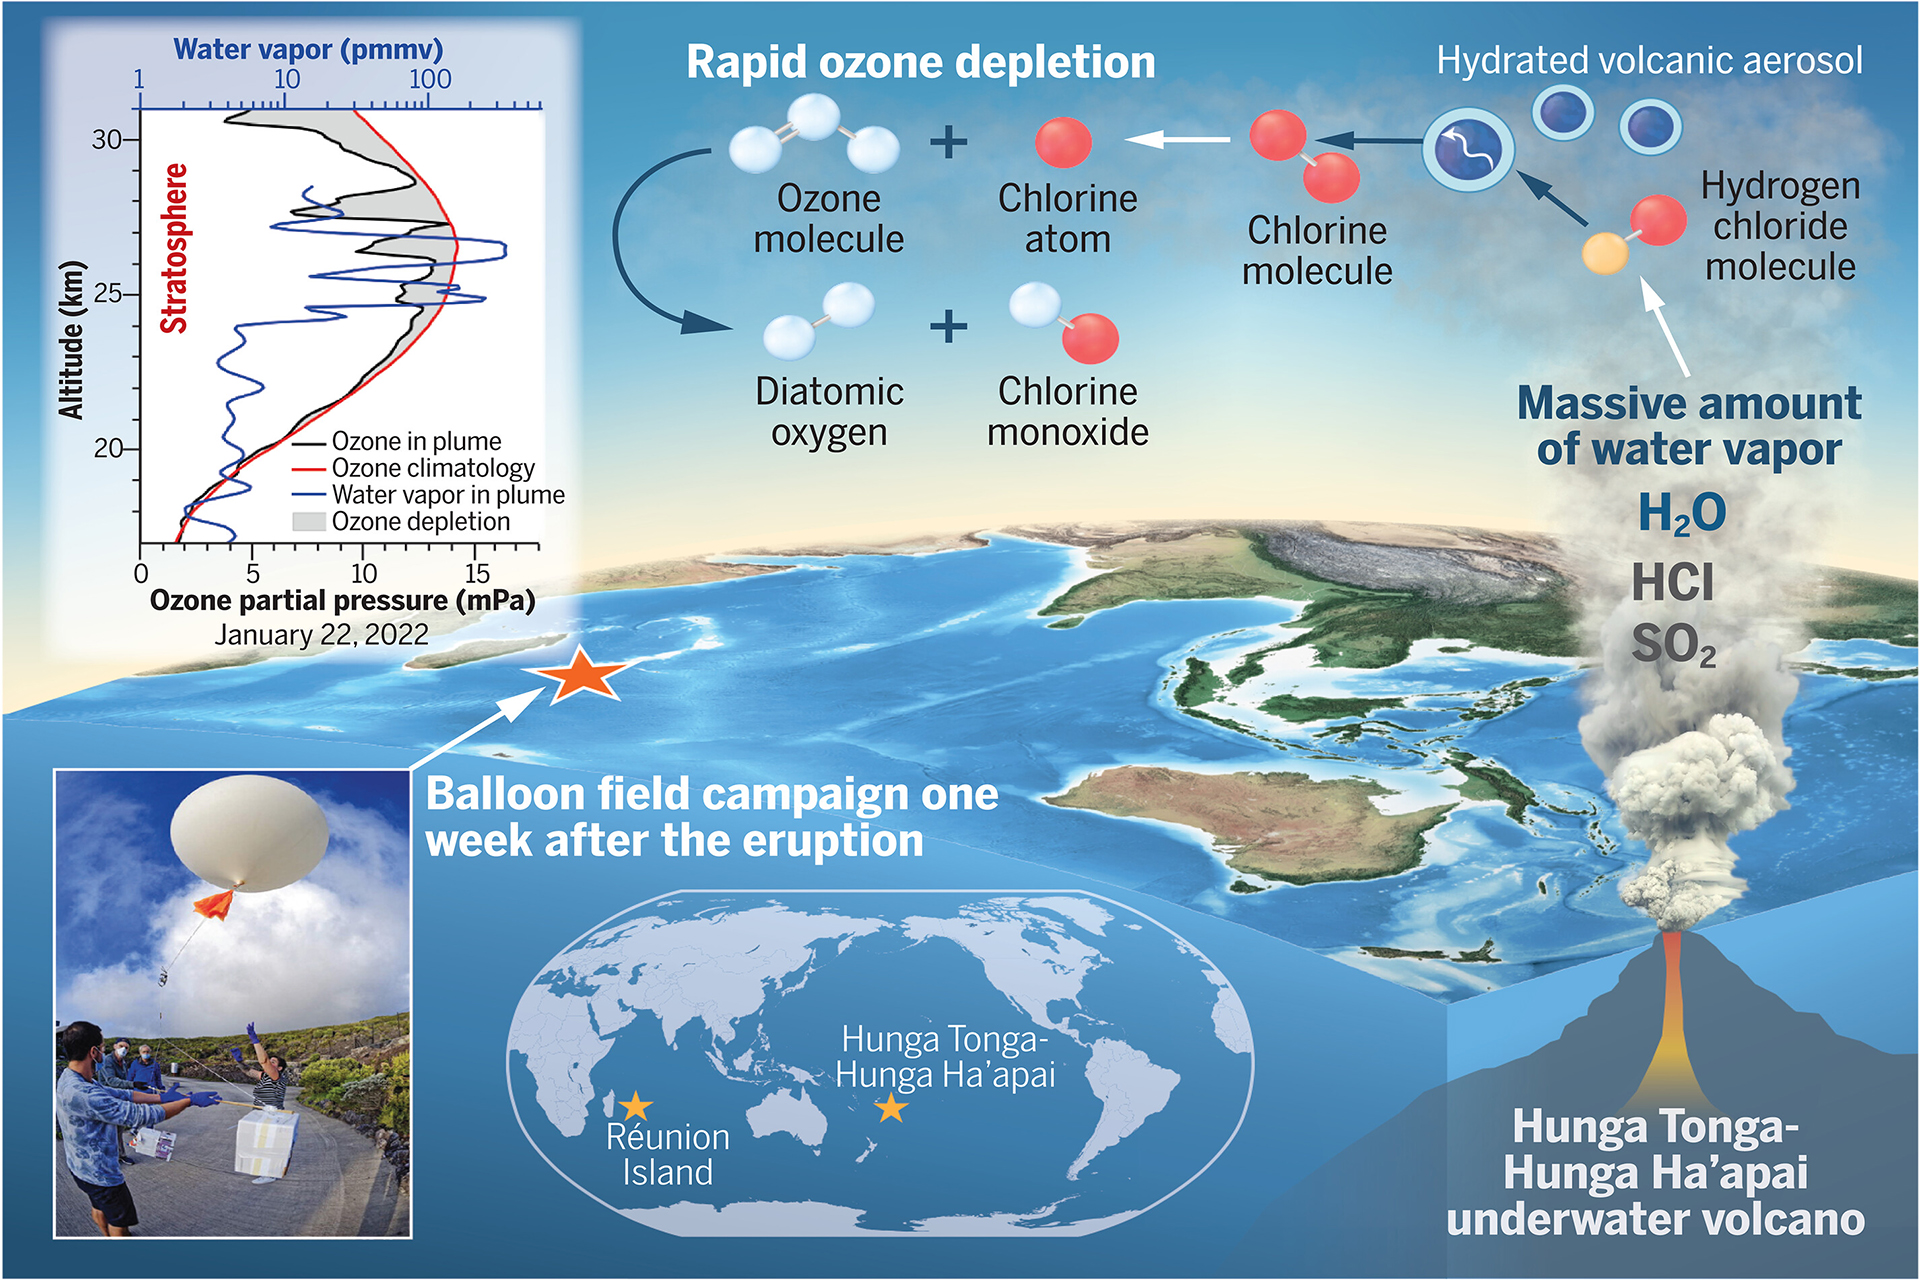 Схема процесса истончения озонового слоя из-за извержений вулканов на примере исследования Хунга-Тонга-Хунга-Хаапай